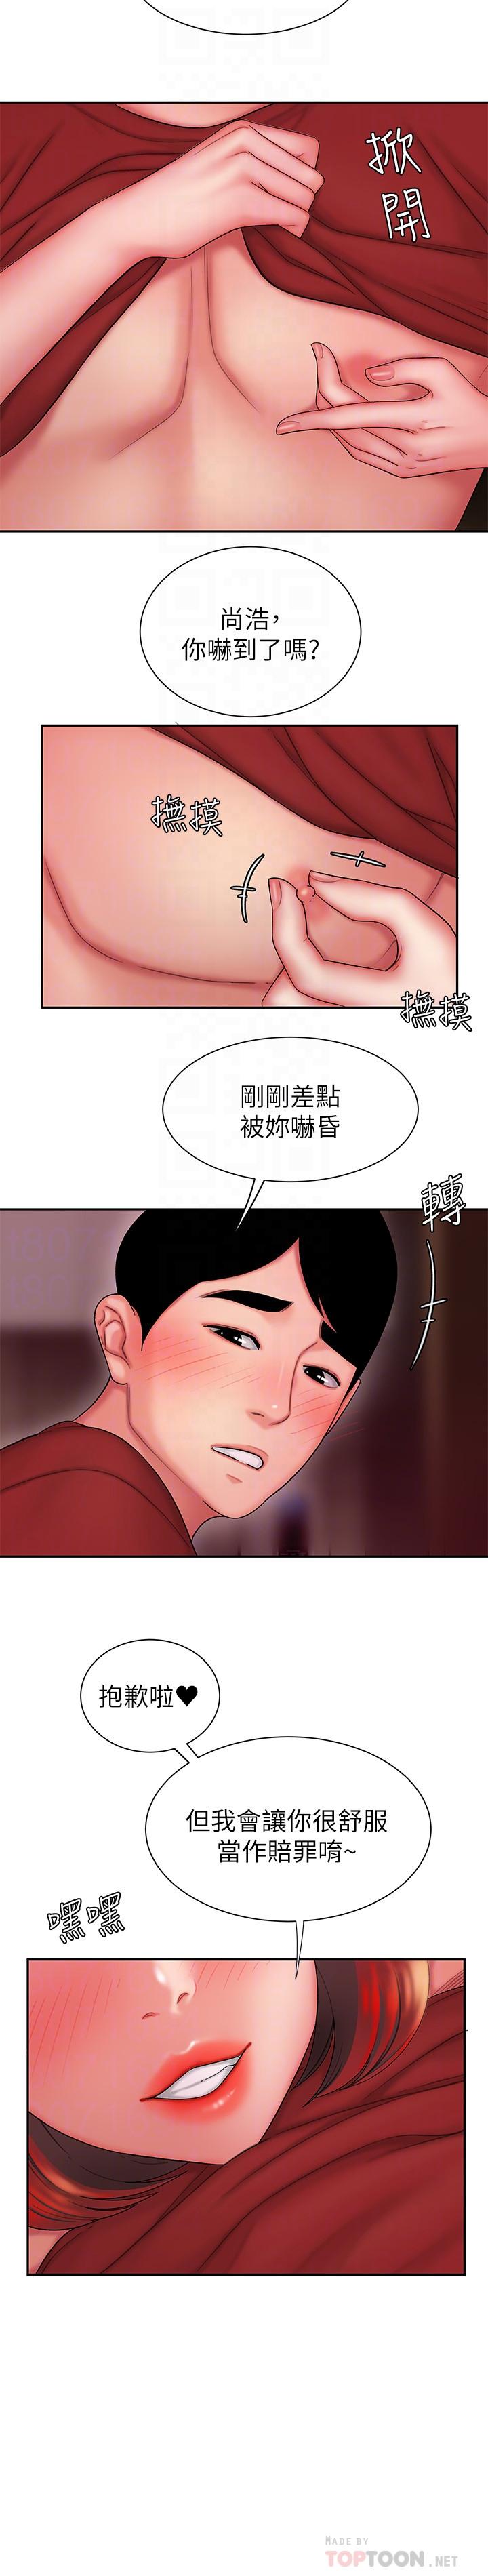 《幸福外送员》漫画 第26话 - 尚浩~要来个油压按摩吗?